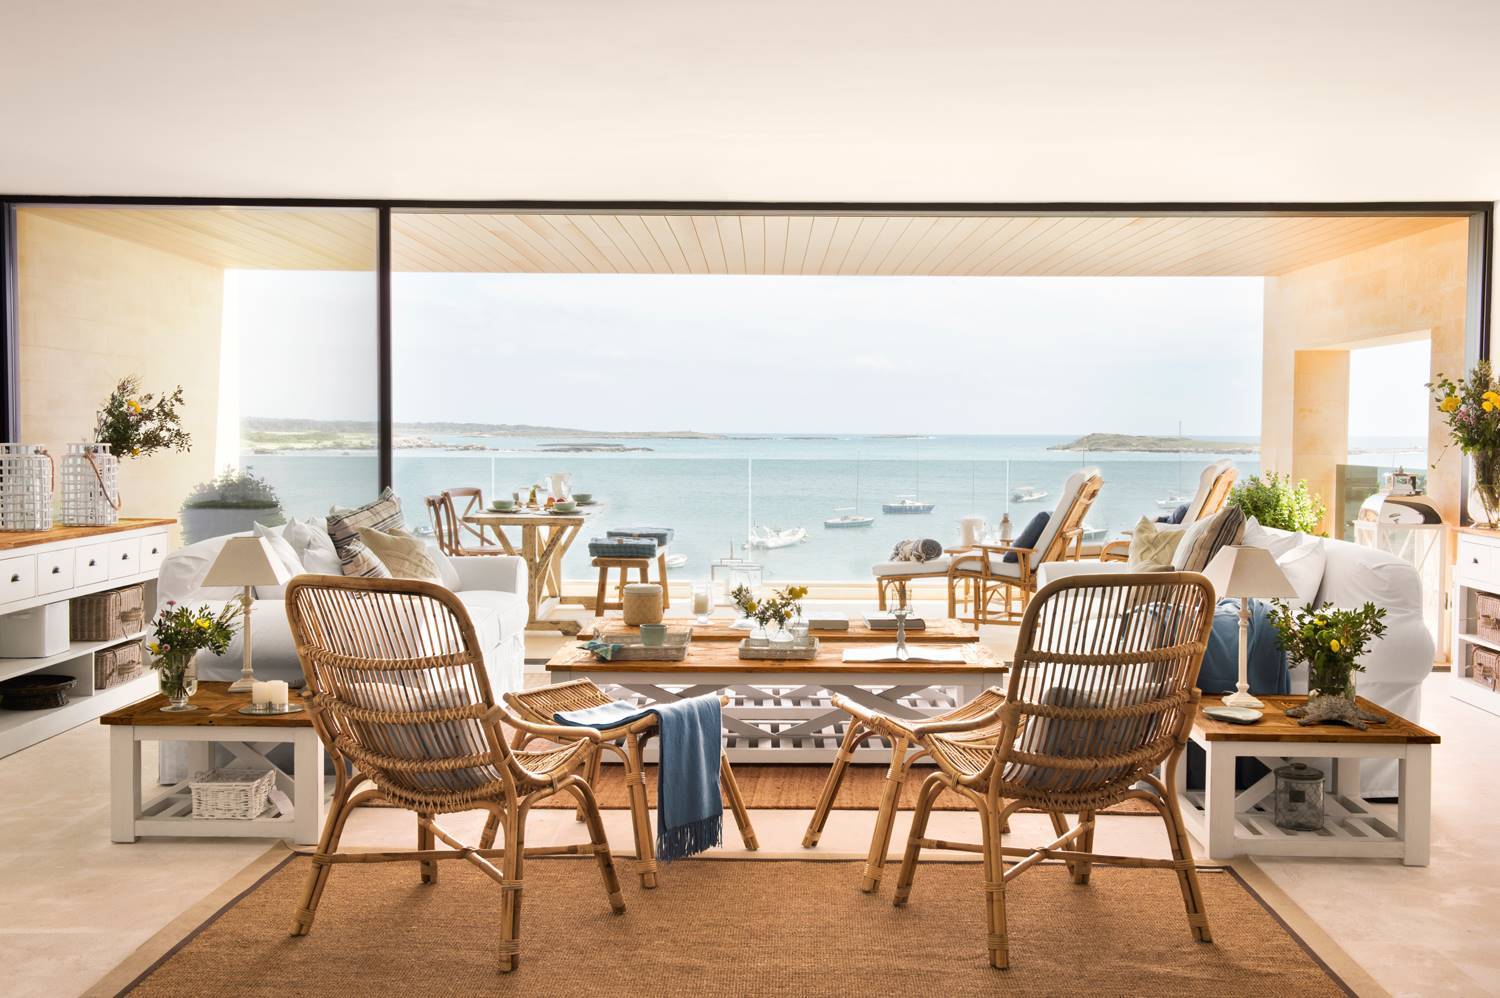 panoramica-de-salon-con-ventanal-con-vistas-al-mar-alfombra-de-fibra-sillas-de-cana-sofas-blancos-454170 4c4e8659 1500x998